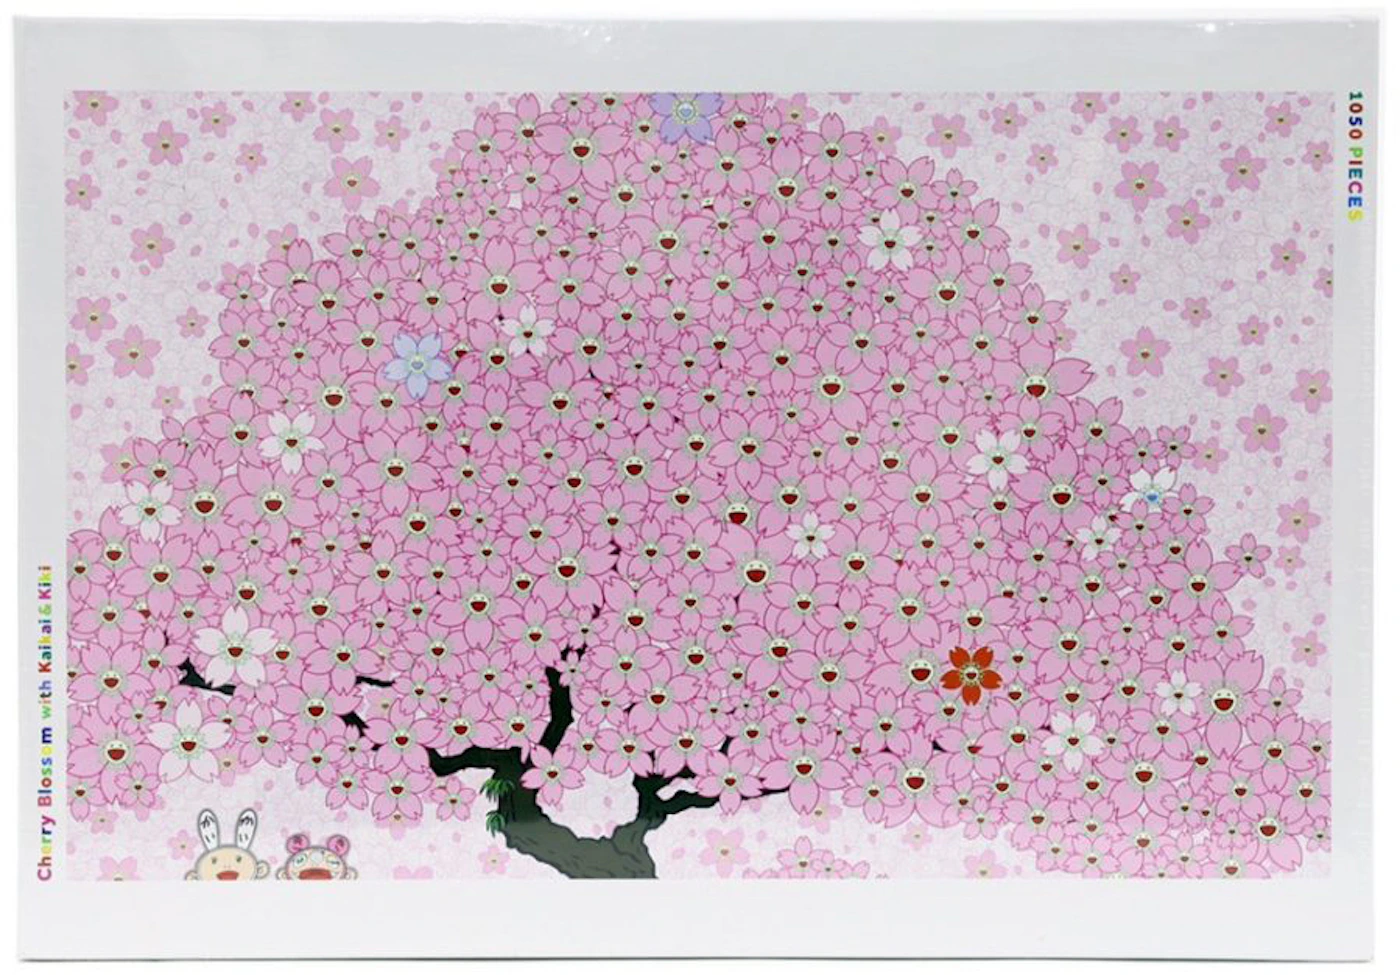 Takashi Murakami, Cherries